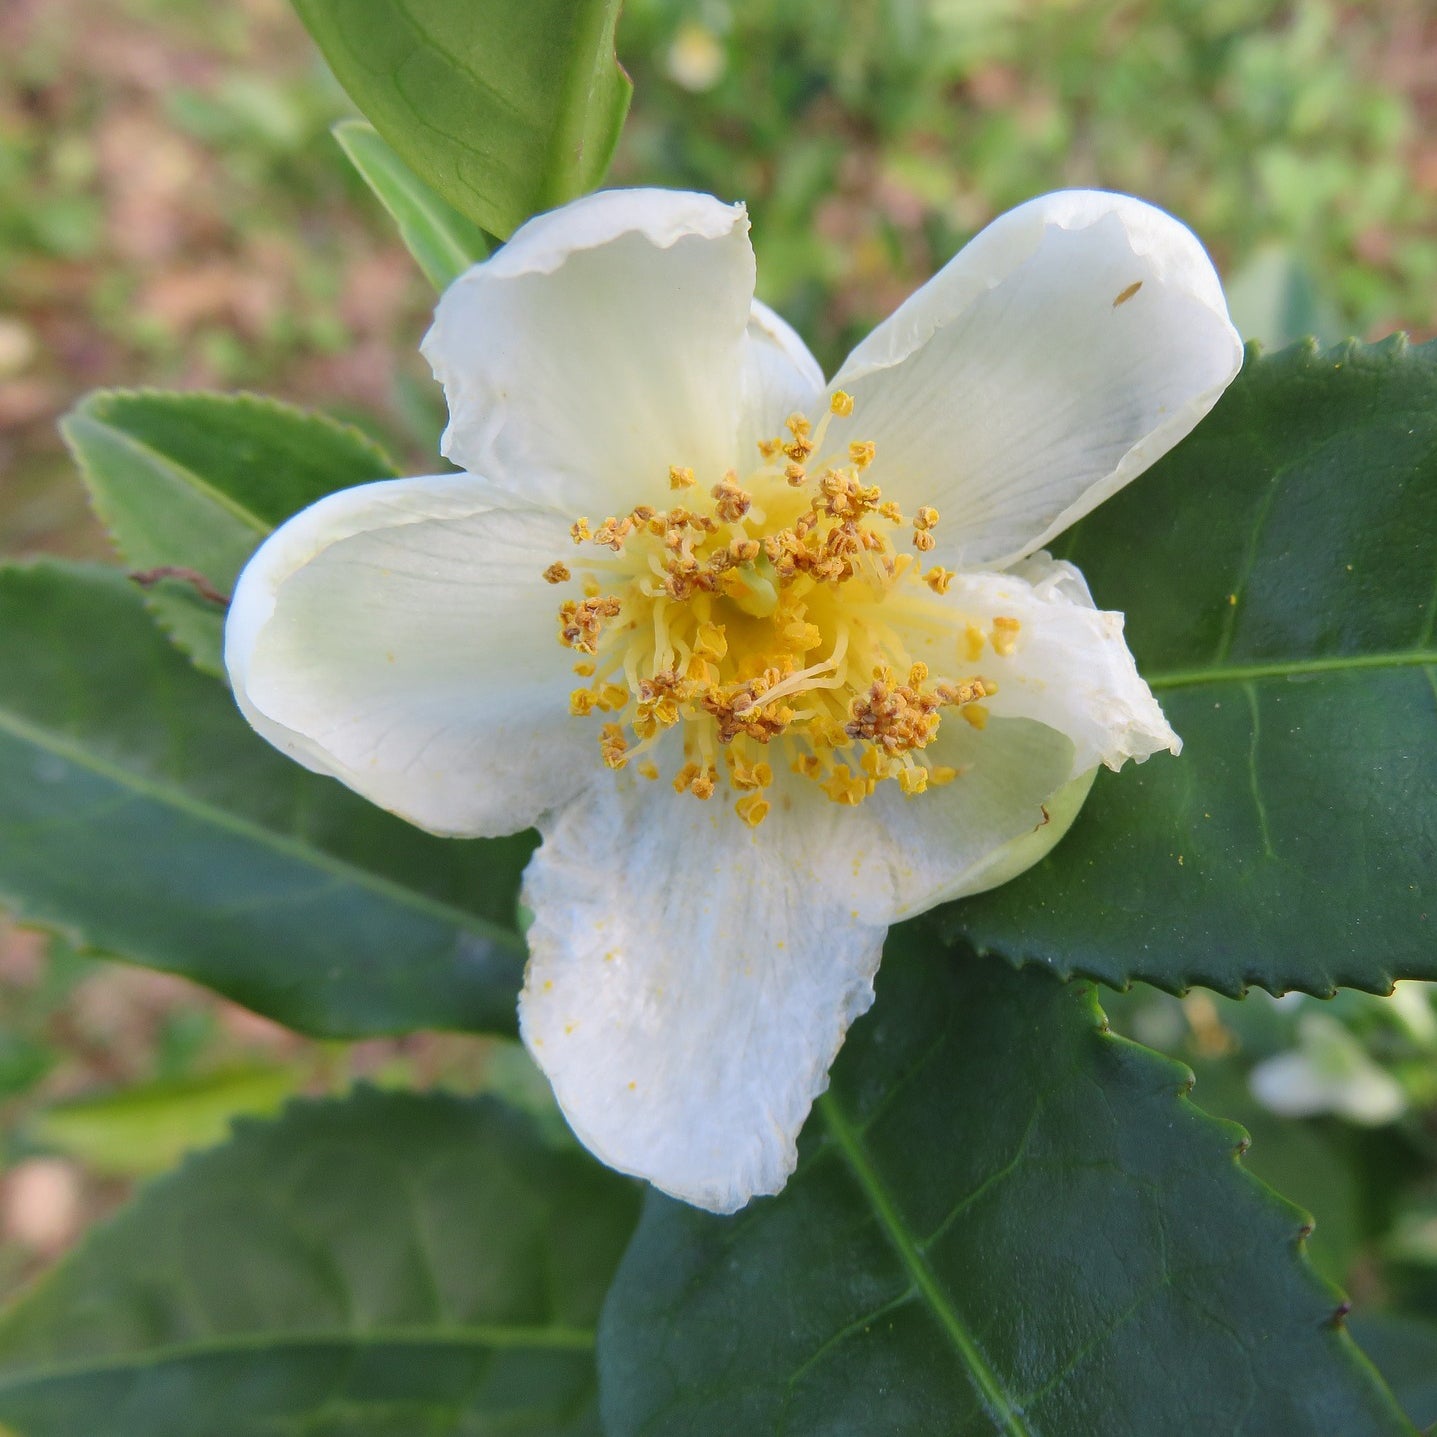 Tea Plant 'Camellia sinensis' Bonsai Tree Houseplant our Garden Seeds